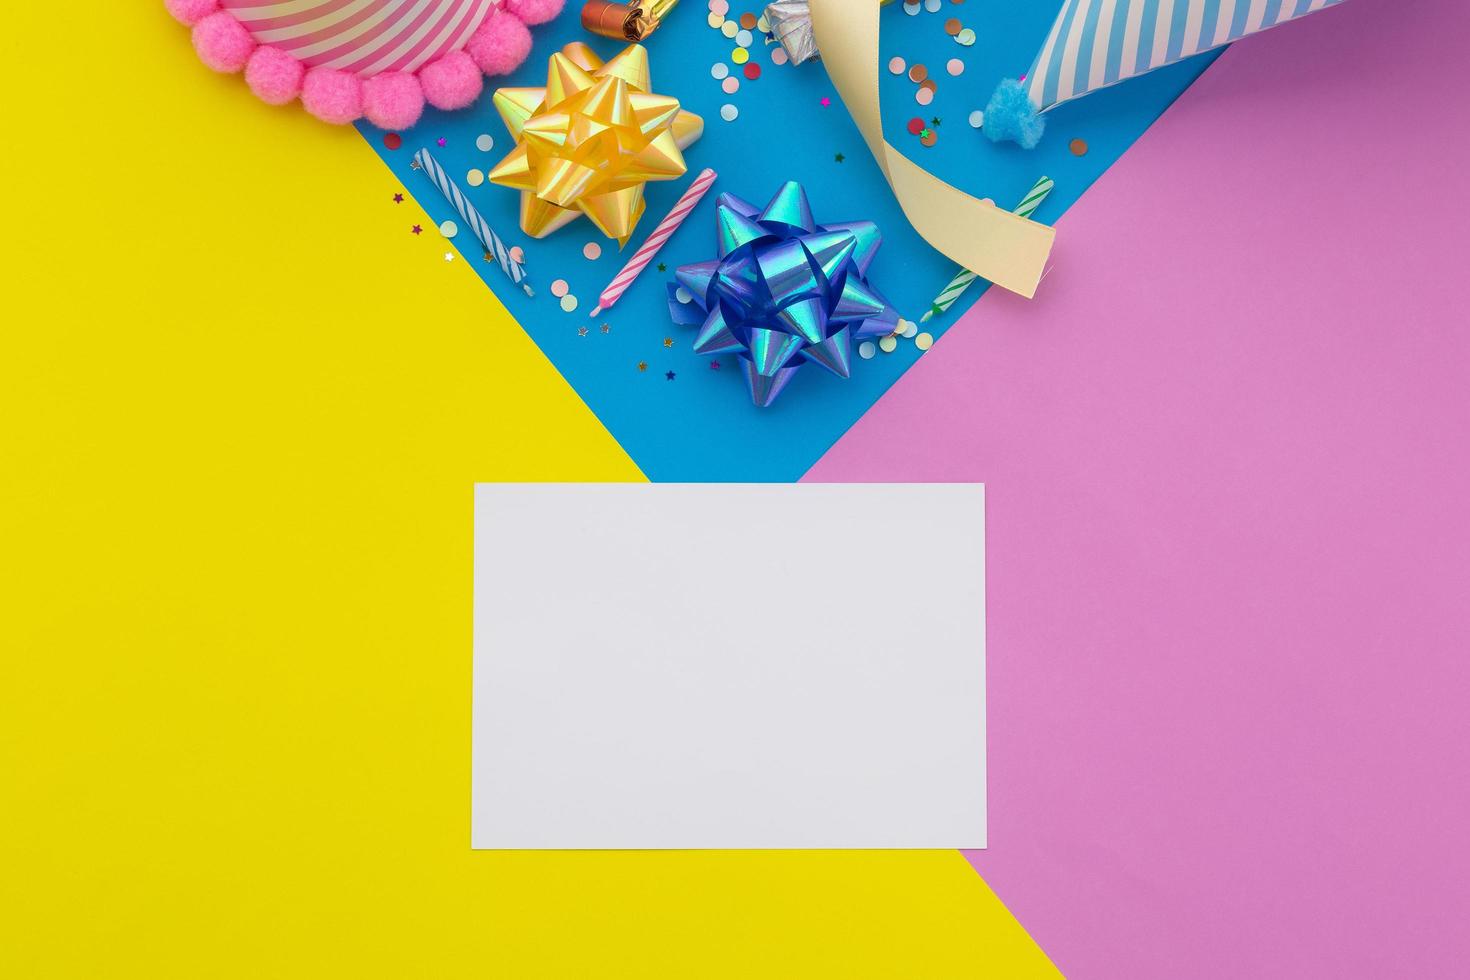 Alles Gute zum Geburtstag Hintergrund, flache bunte Partydekoration mit Flyer-Einladungskarte auf pastellgelbem, blauem und rosa geometrischem Hintergrund foto